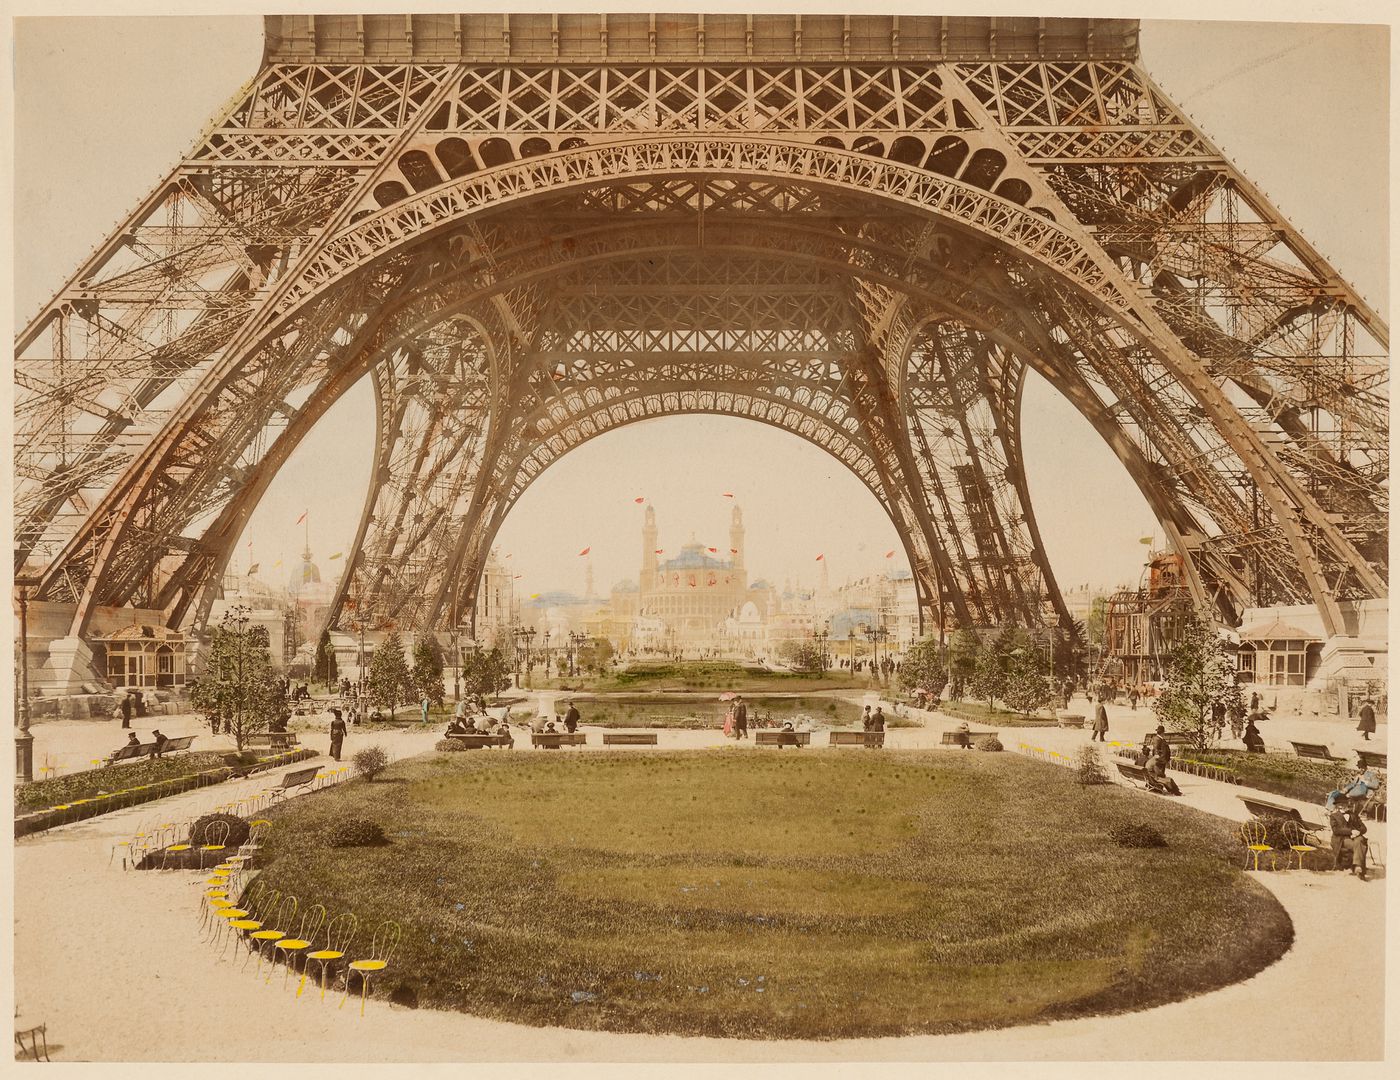 Eiffel Tower, Exposition Universelle de 1900, Paris